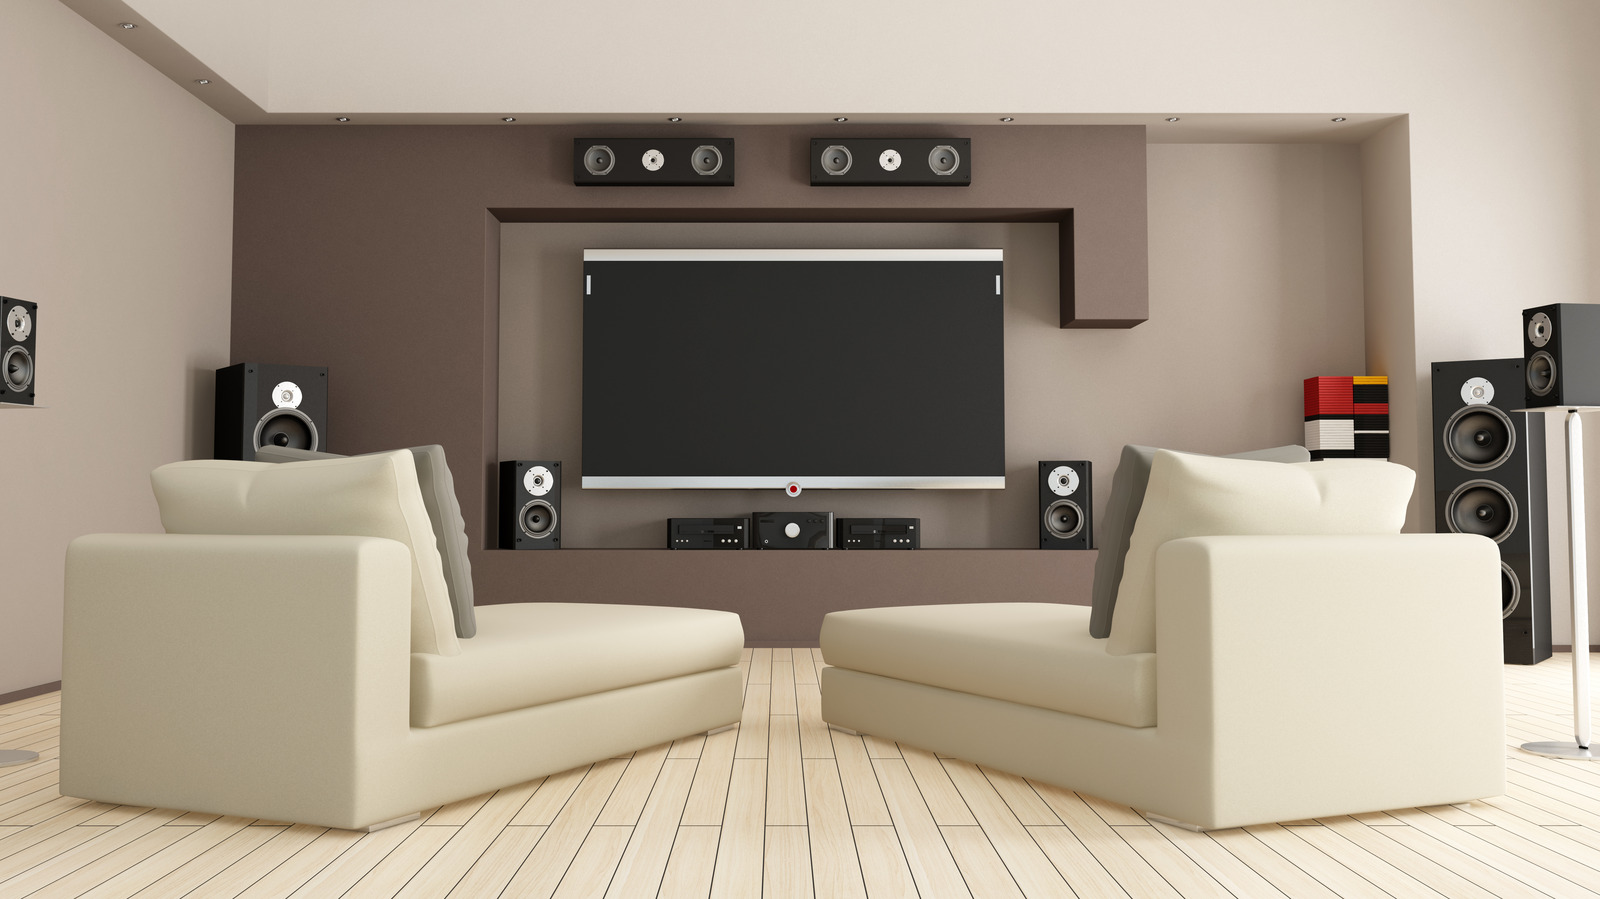 Estos sistemas de sonido envolvente inalámbricos de primera categoría mejorarán la configuración de entretenimiento de su hogar